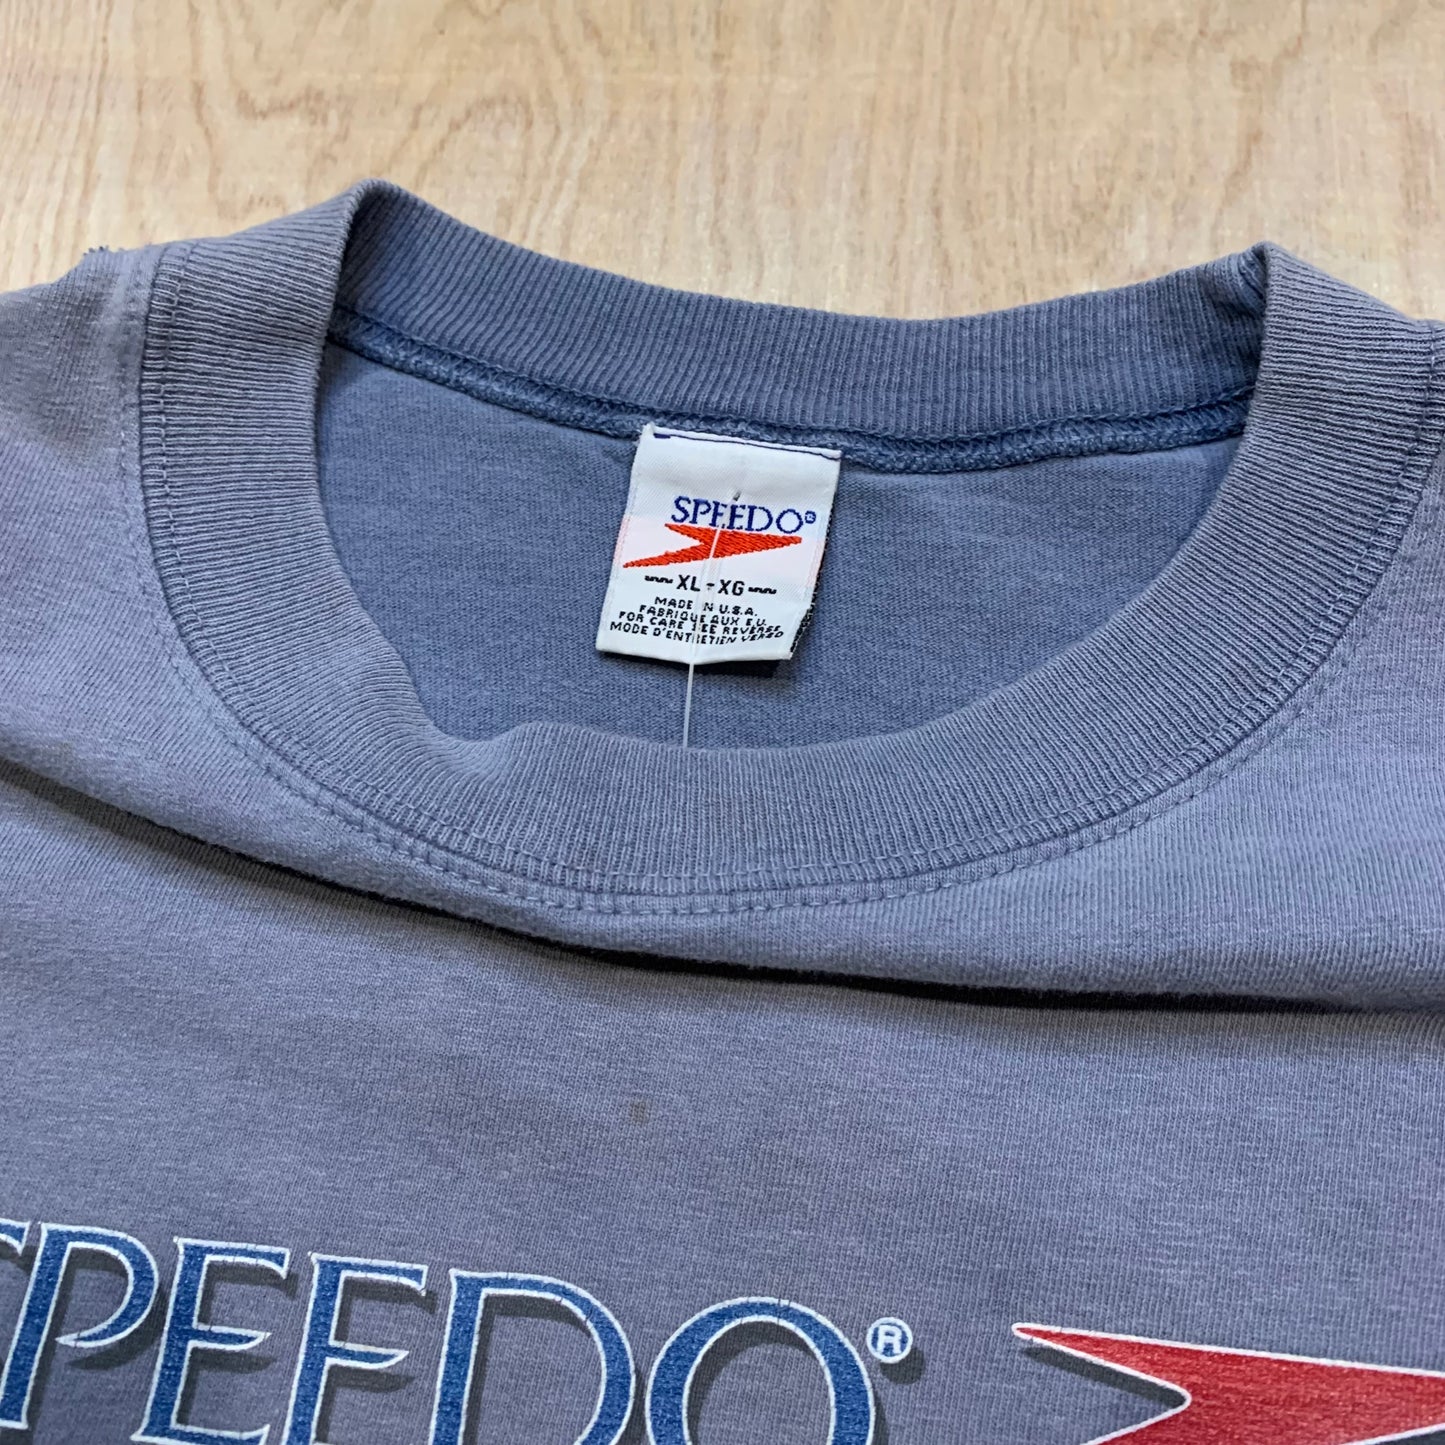 1996 Speedo America T-Shirt